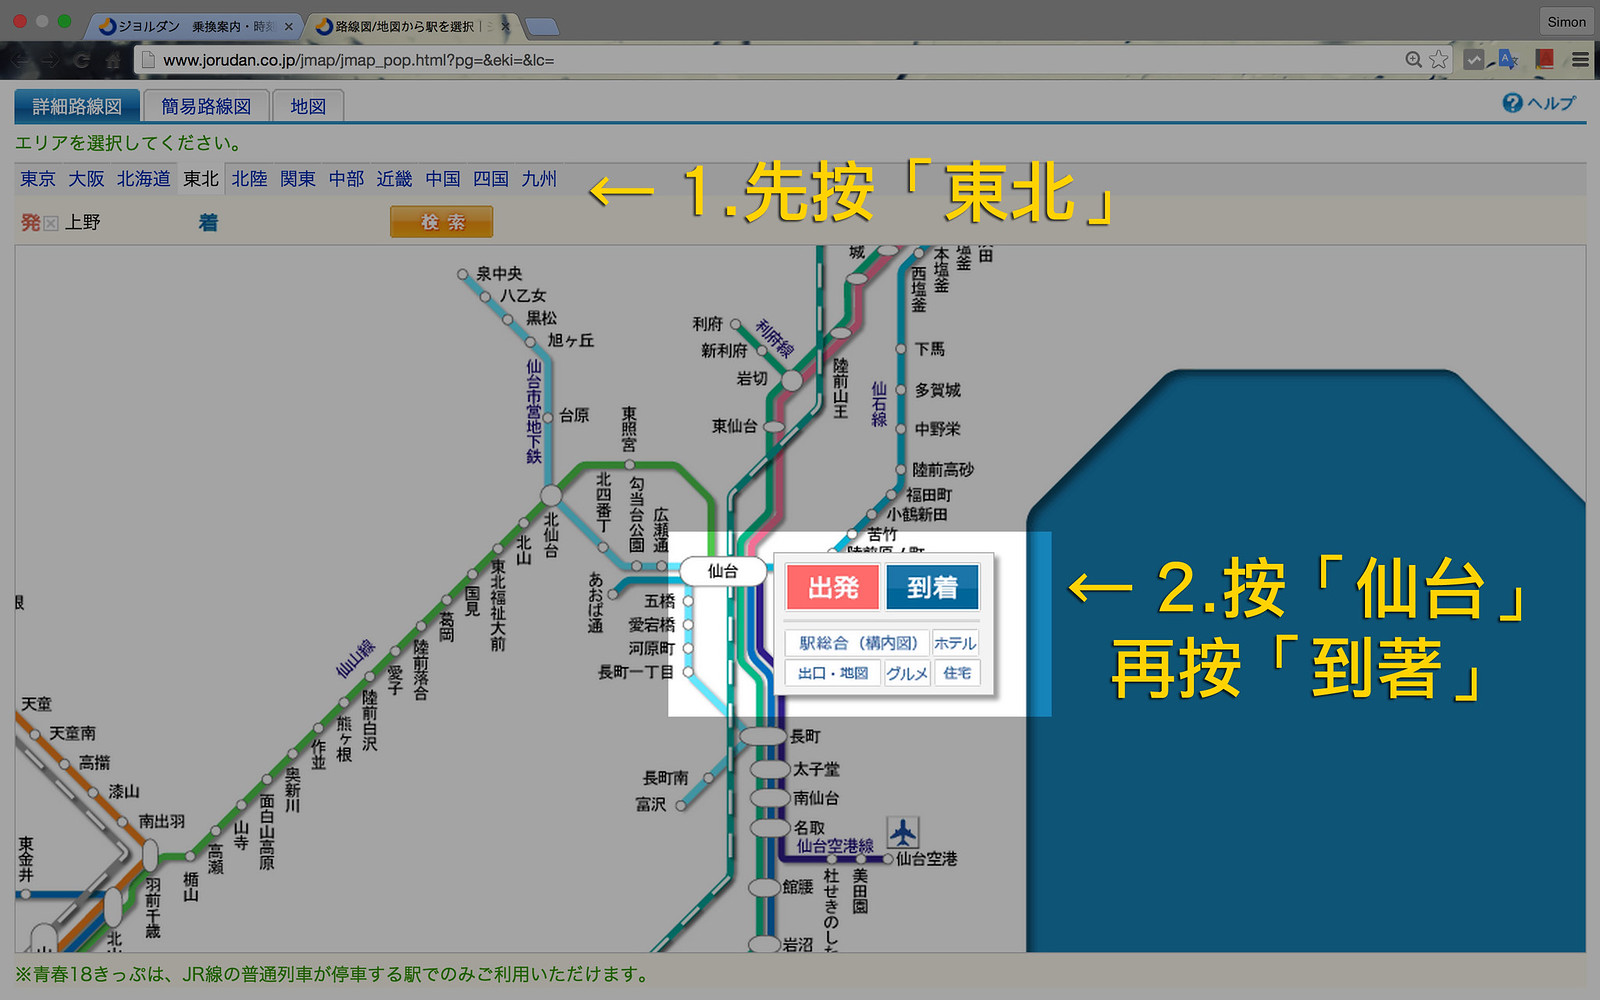 日本鐵路時刻表 www.jorudan.co.jp 使用教學